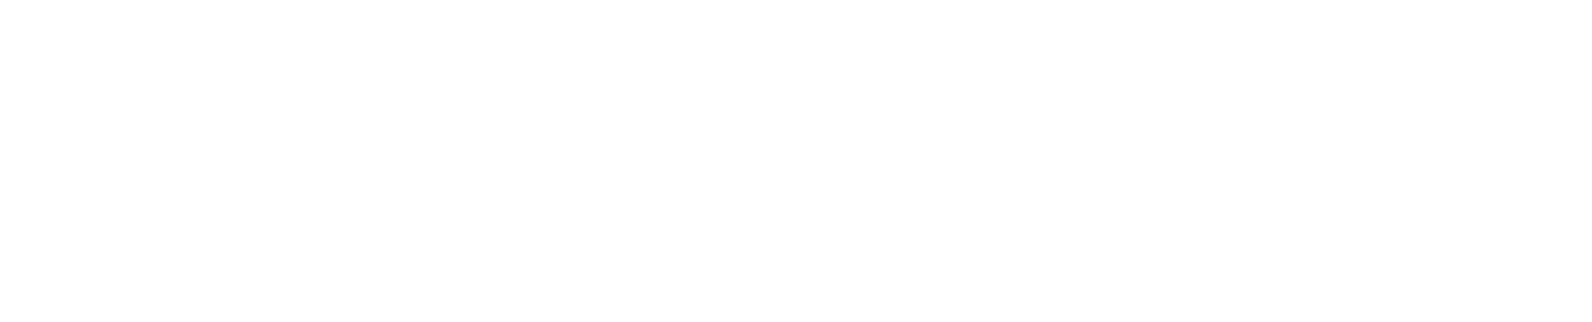 Adecoagro logo grand pour les fonds sombres (PNG transparent)